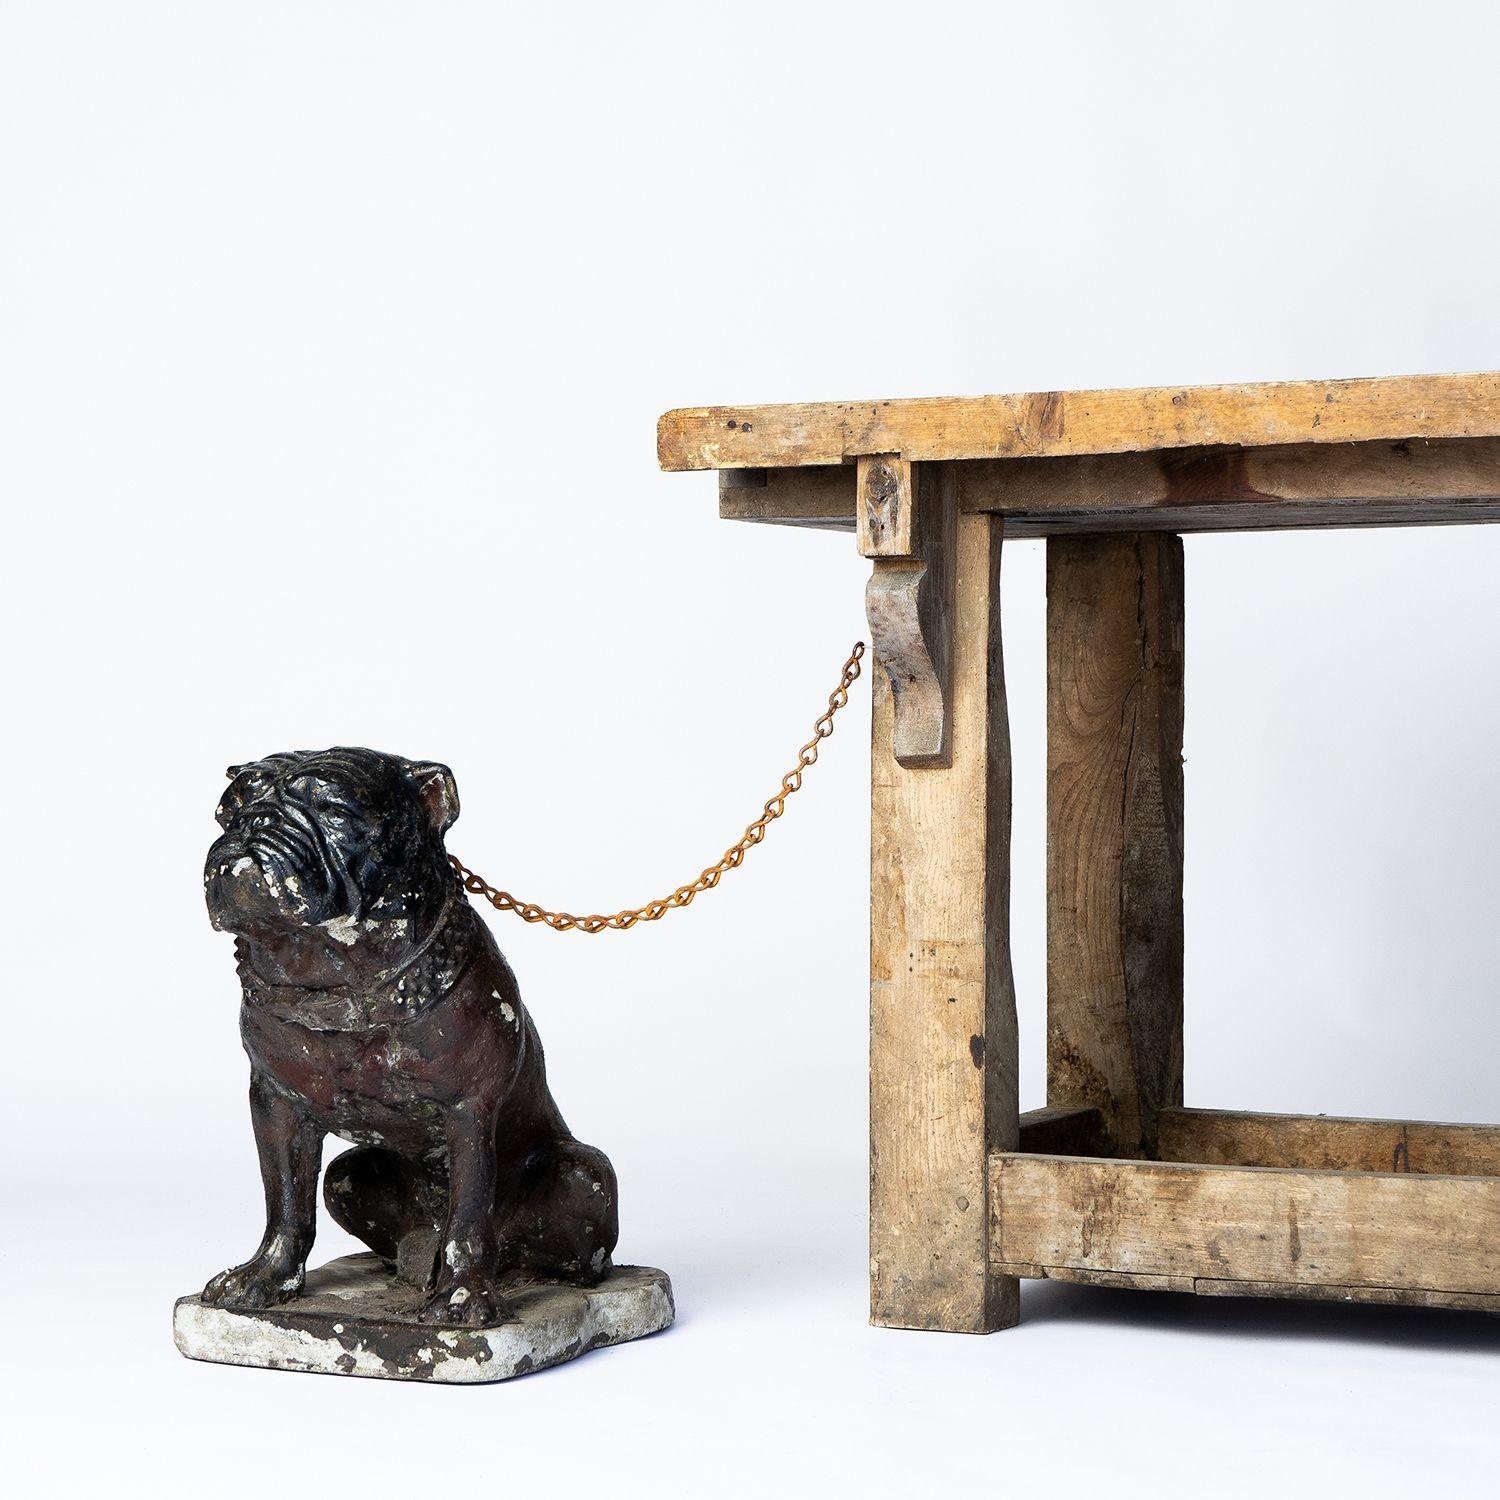 Vintage Cast Outdoor Hundeskulptur

Eine charmante Ergänzung für jeden Garten, aber auch im Haus macht sie eine gute Figur.

Sie stammt aus dem frühen 20. Jahrhundert, wahrscheinlich aus der Zeit um 1920.

Natürlich abgenutzte Oberfläche mit Resten